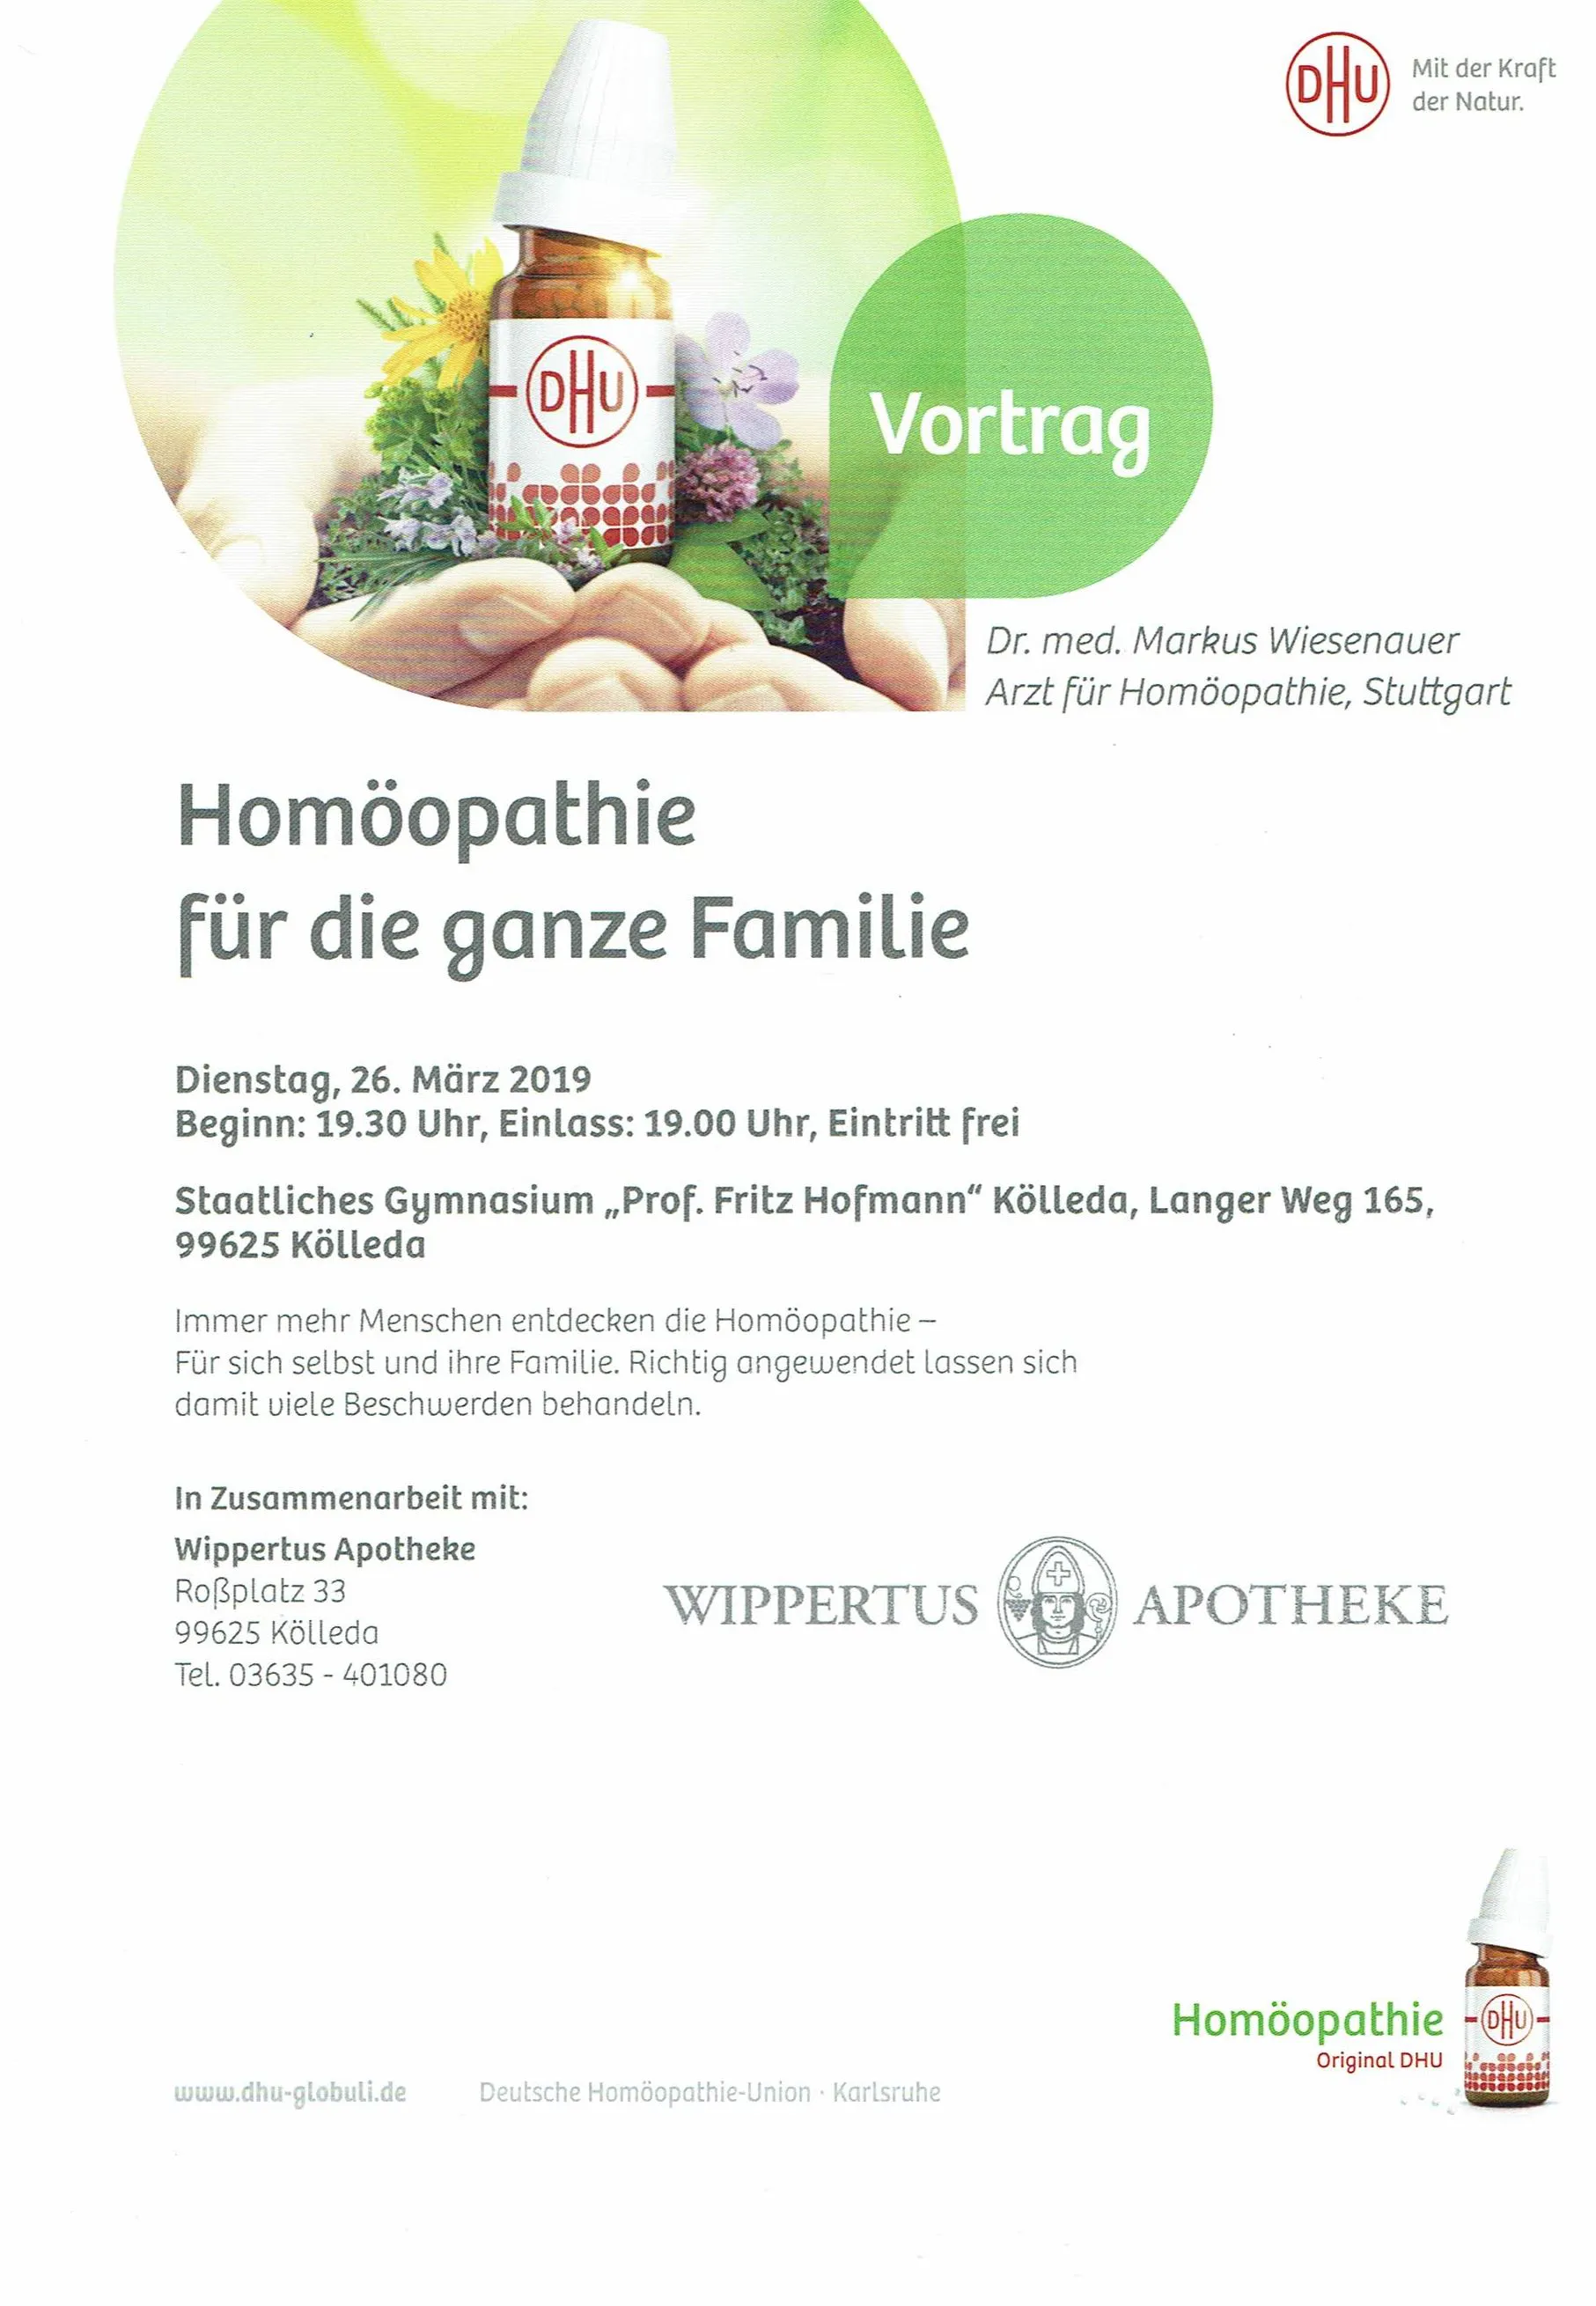 Homöopathie Vortrag am Dienstag, 26.03.2019 in Kölleda